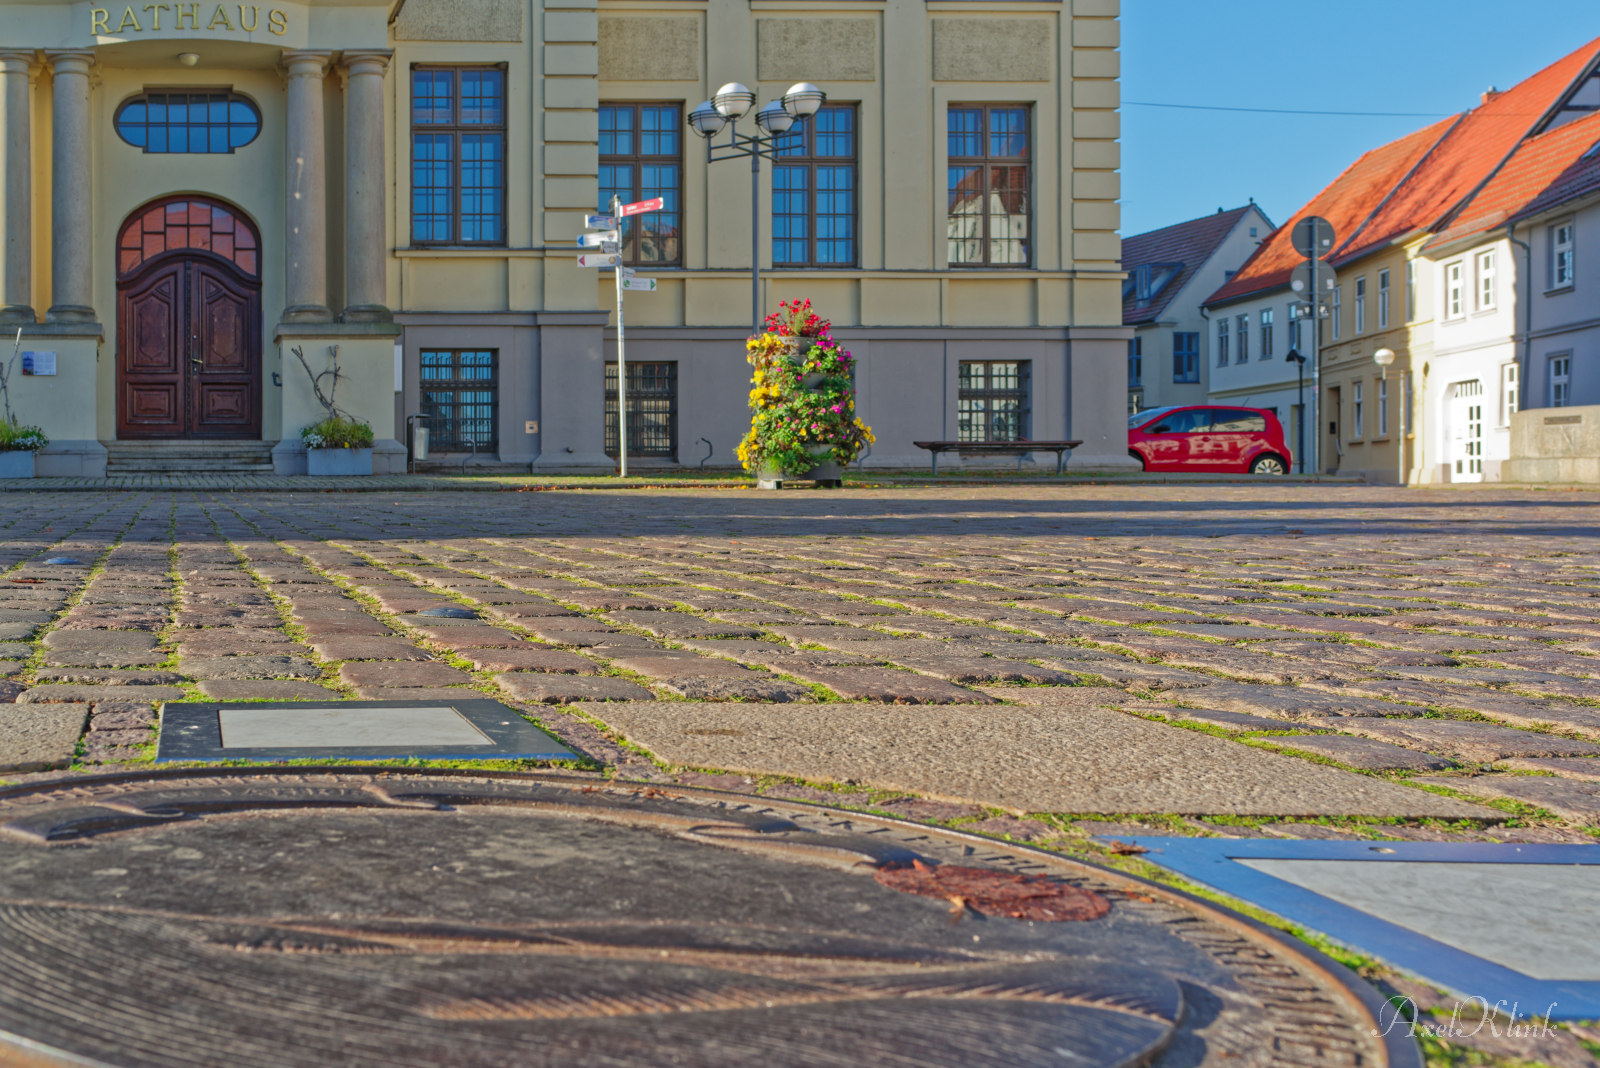 Rathaus und Mittelpunkt von MV